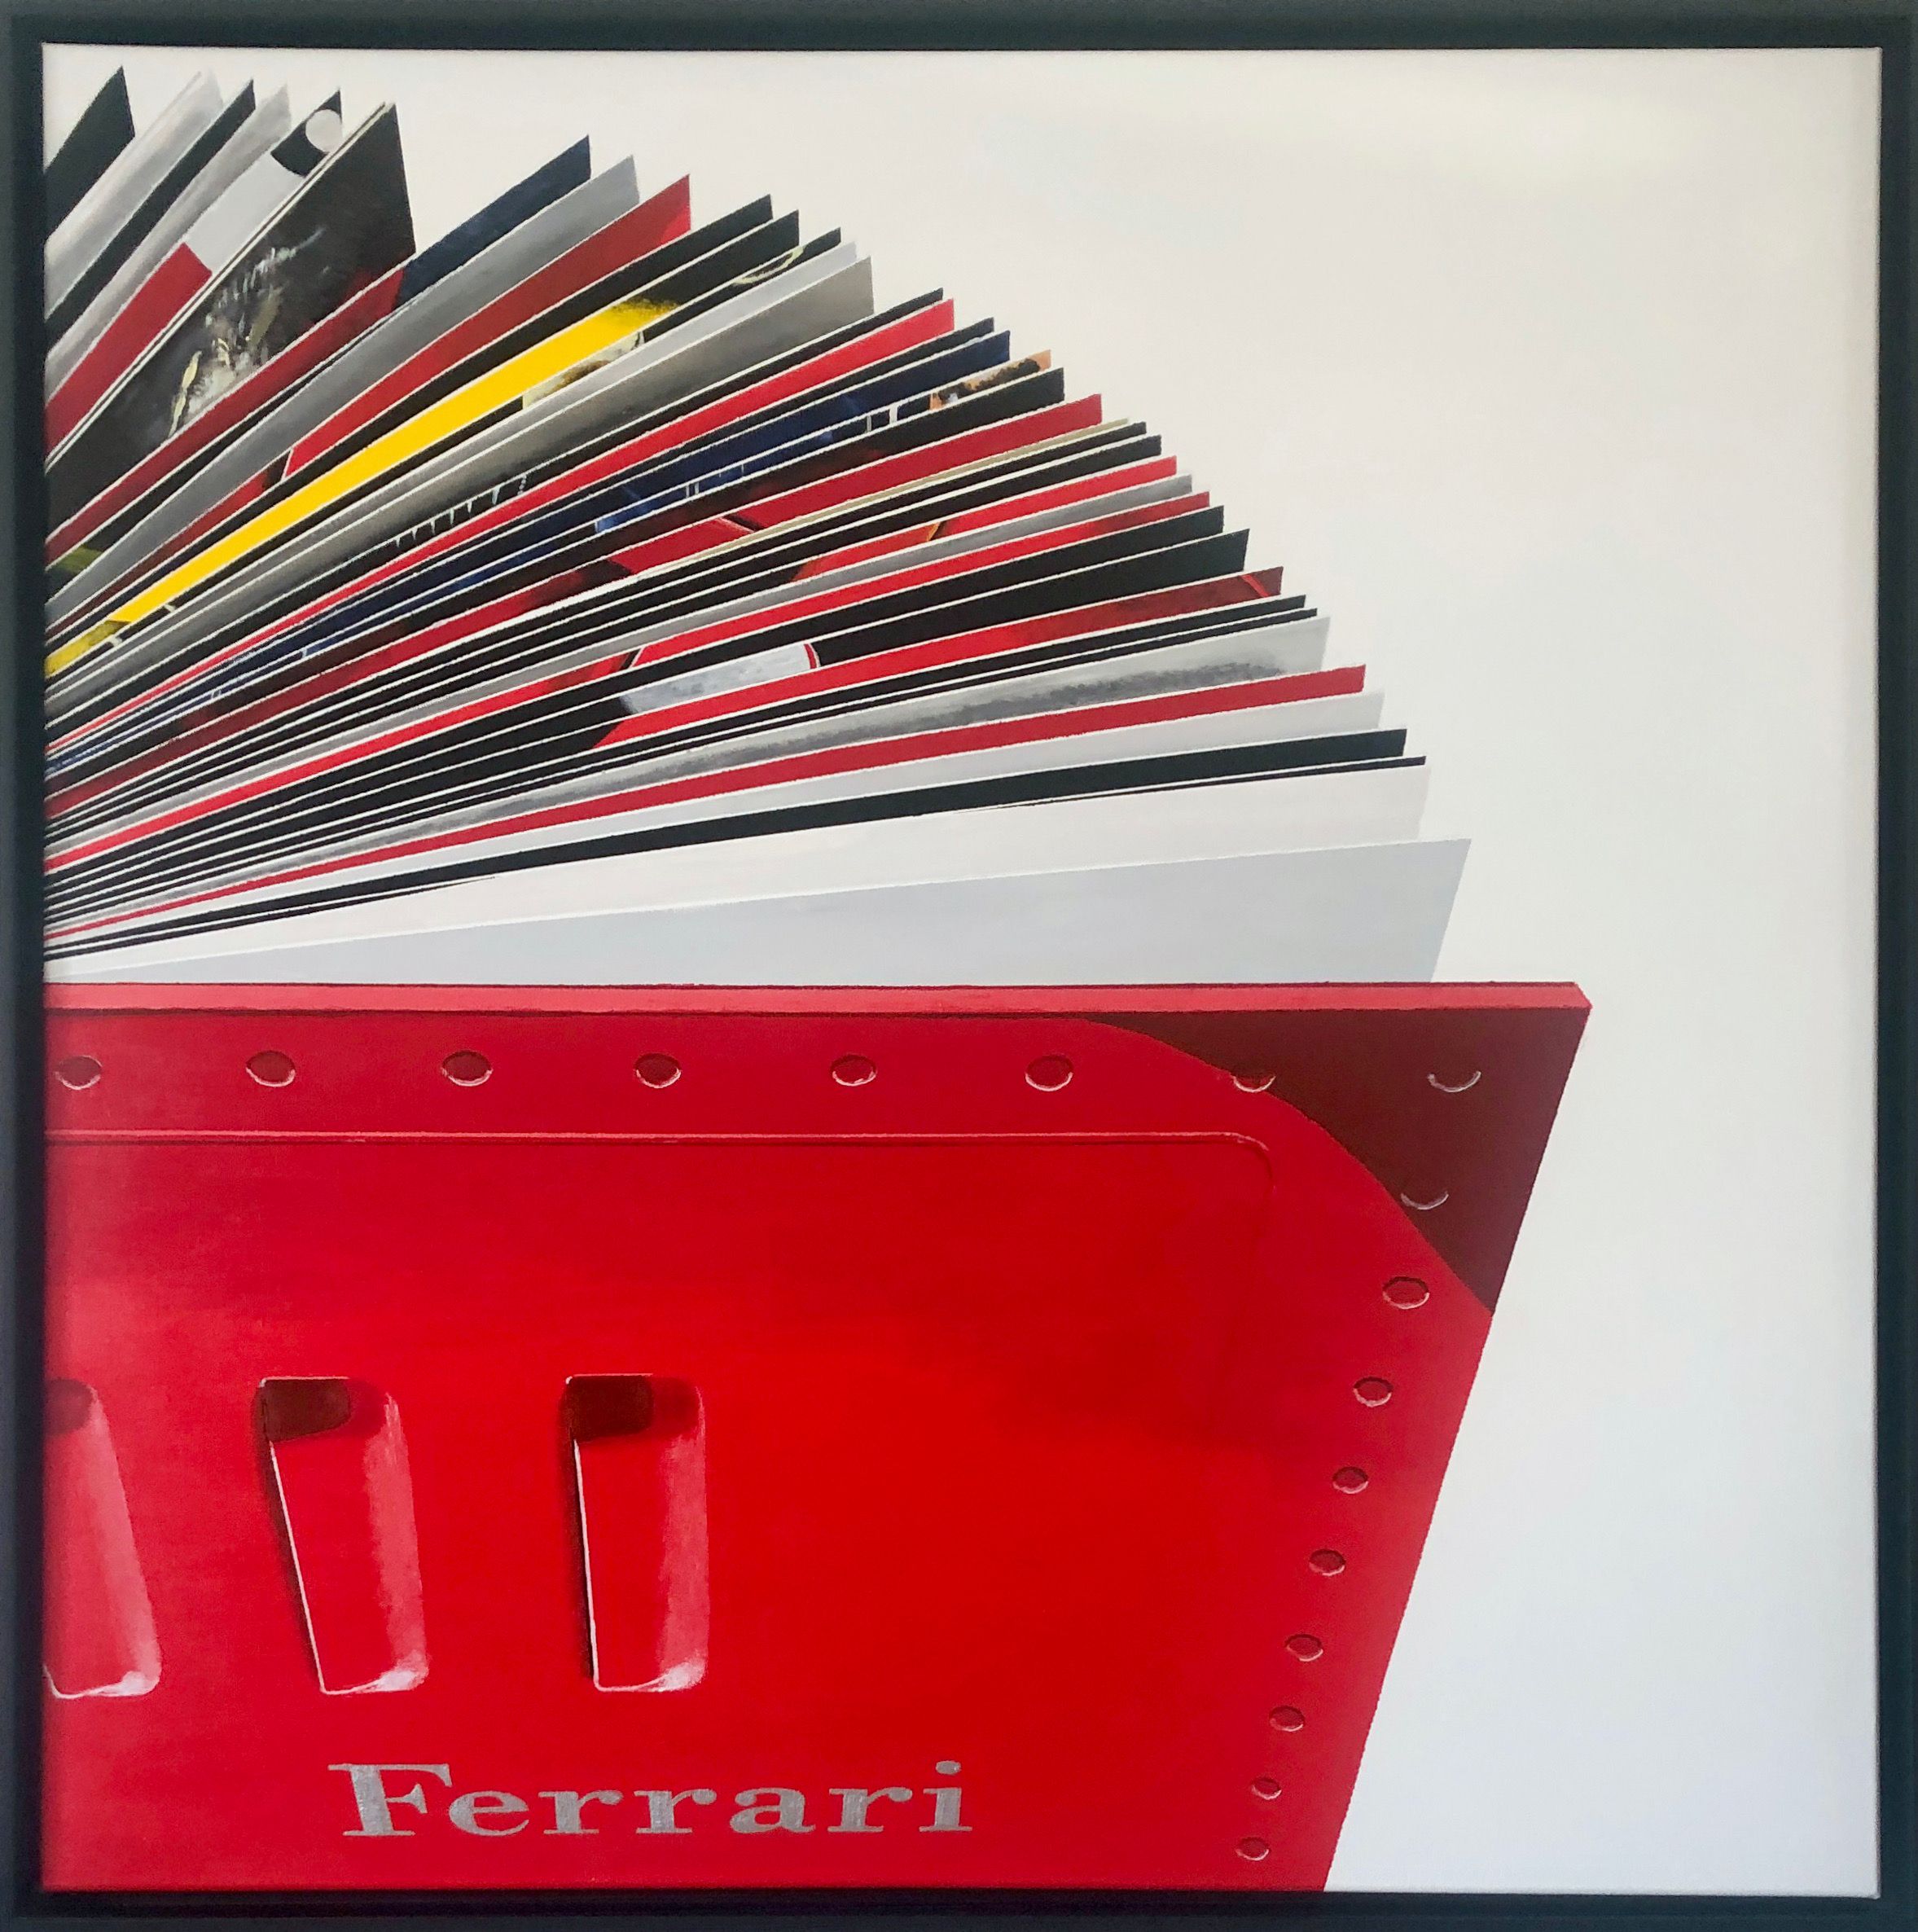 Rolf Gnauck "FERRARI" 详细的大尺寸彩色画作，是一本打开的书